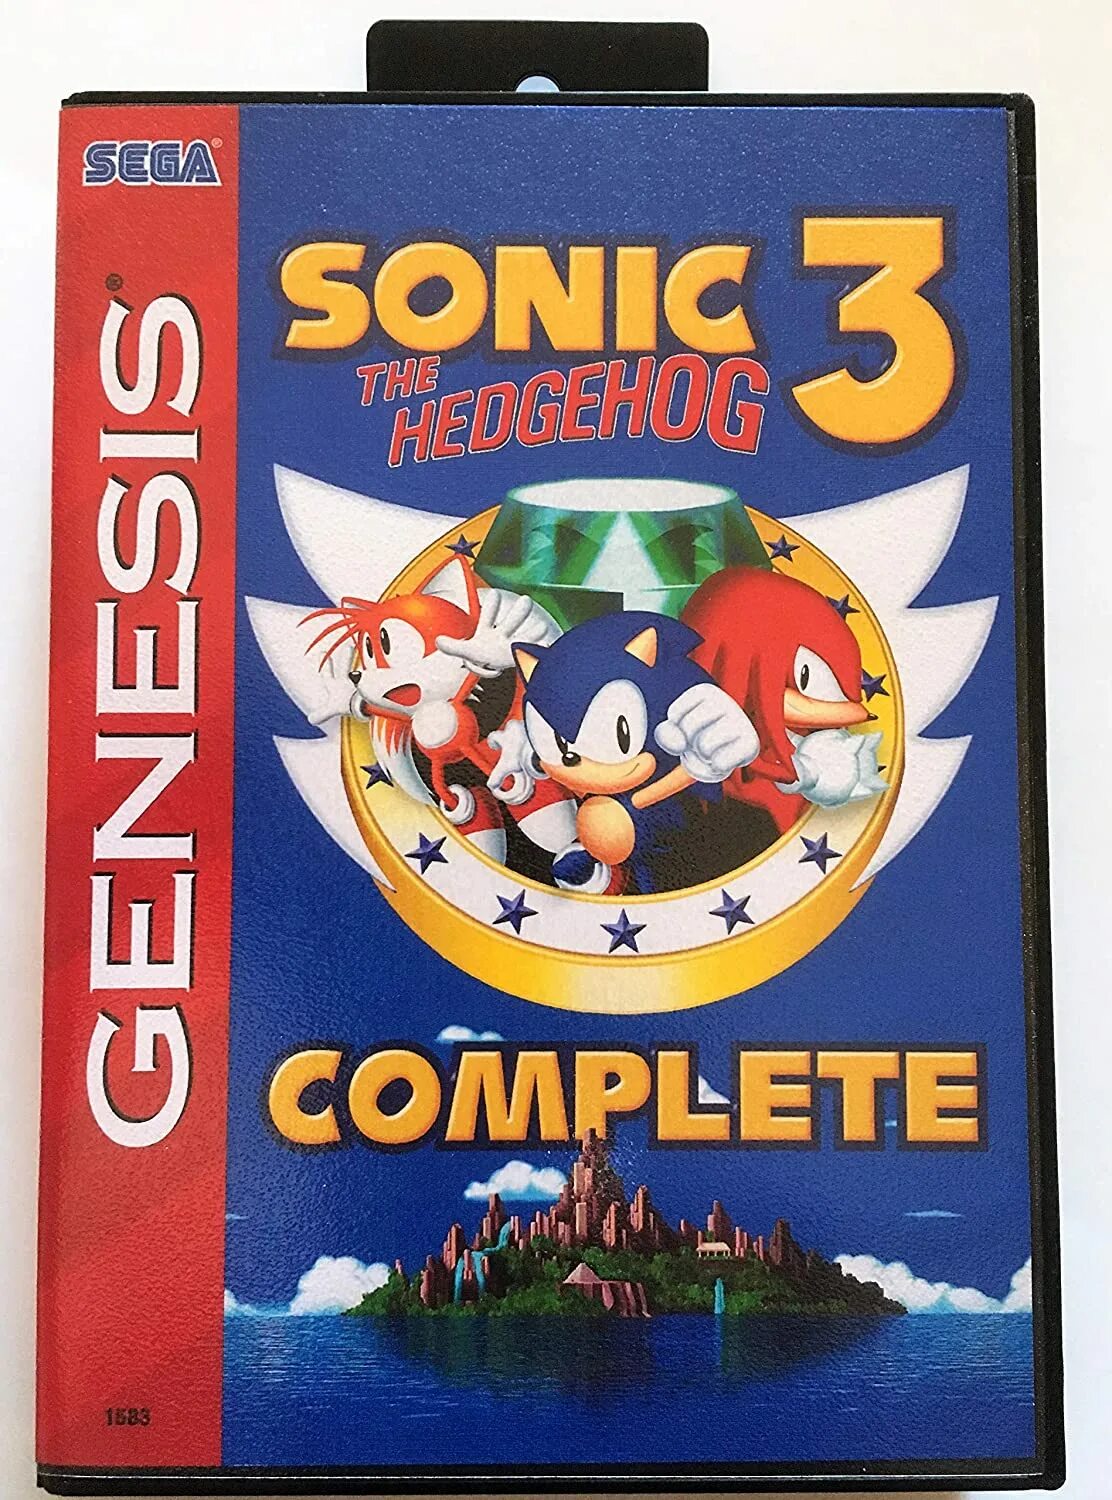 Игры соник сега 3. Sonic 3 Sega картридж. Sonic 3 картридж Sega Genesis. Sonic the Hedgehog 3 Sega картридж. Sonic 3 Sega Mega Drive.